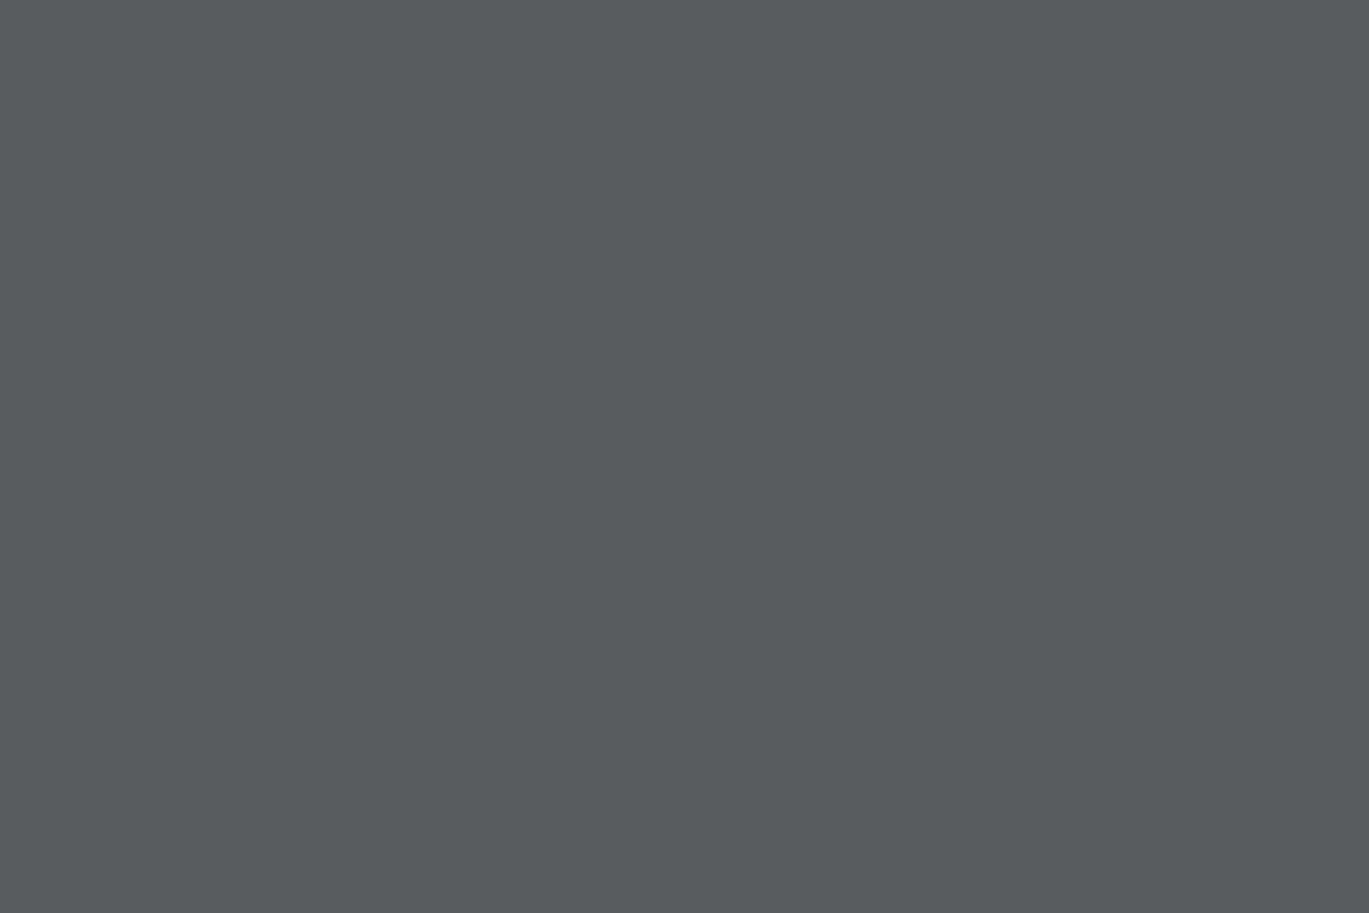 Юрий Векслер за камерой. Съемка на Смоленском кладбище. «Приключения Шерлока Холмса и доктора Ватсона: Двадцатый век начинается». 1986 год. Фотография: 24smi.org